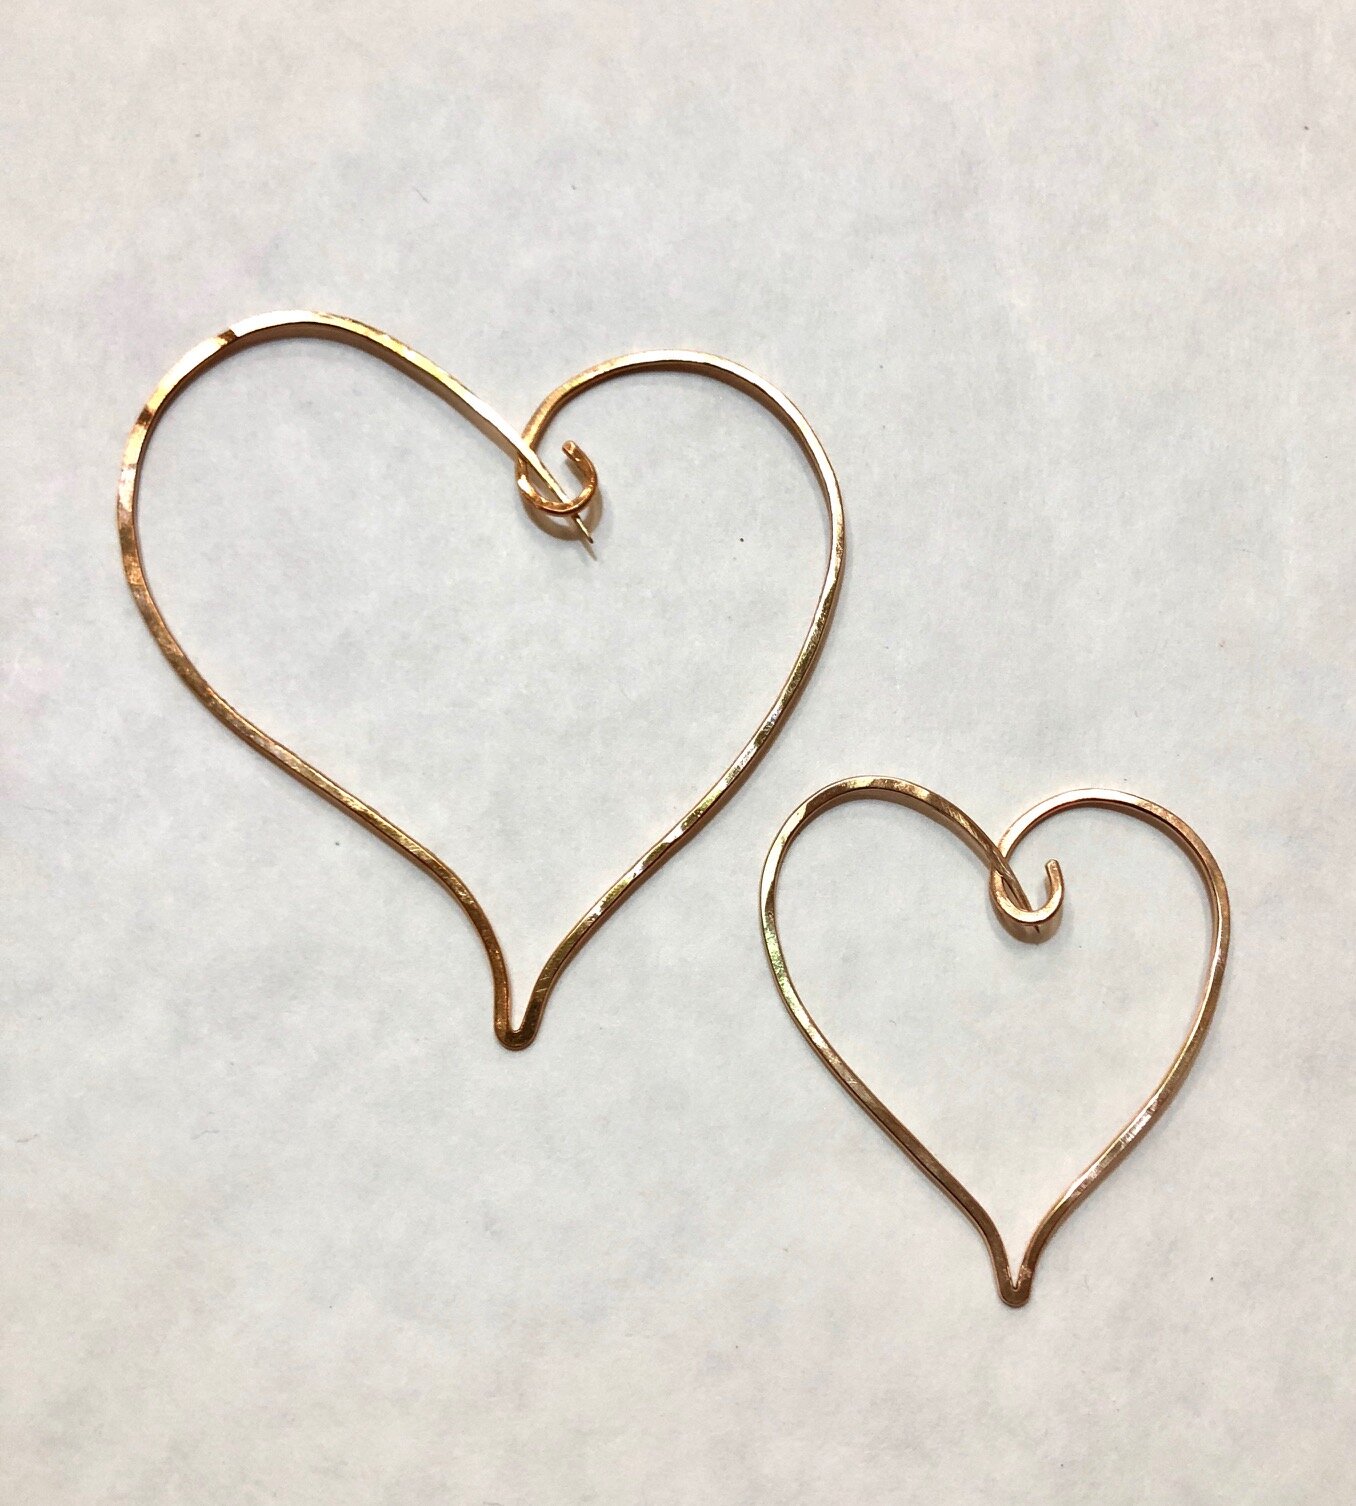 Bronze Heart Pins, 2018